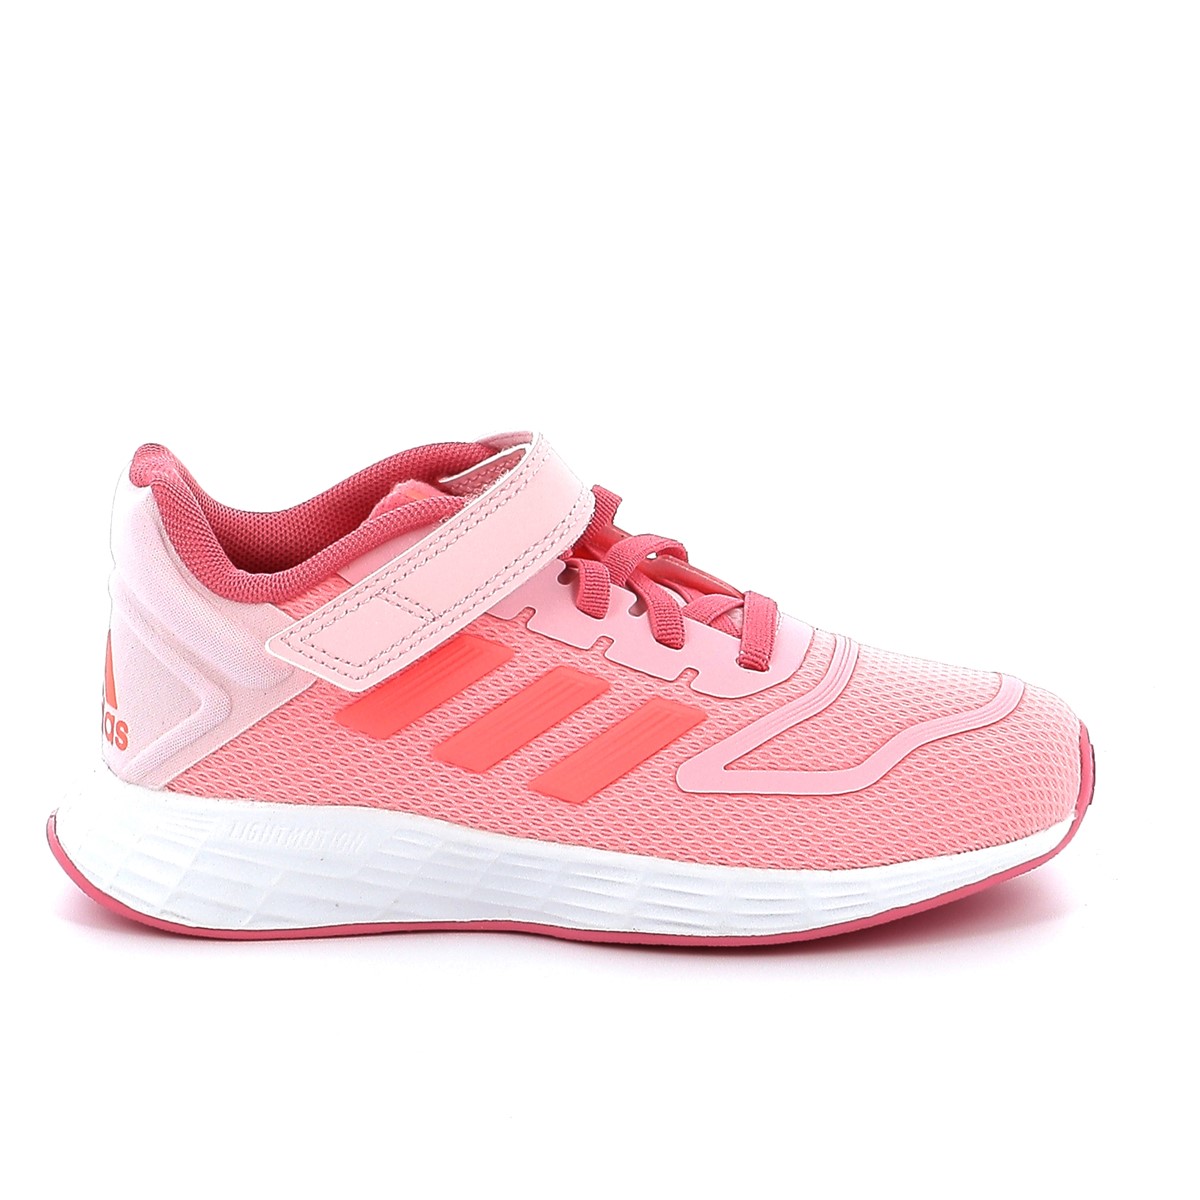 Παιδικό Αθλητικό για Κορίτσι Adidas Duramo Χρώματος Ρόζ GZ1056 9680